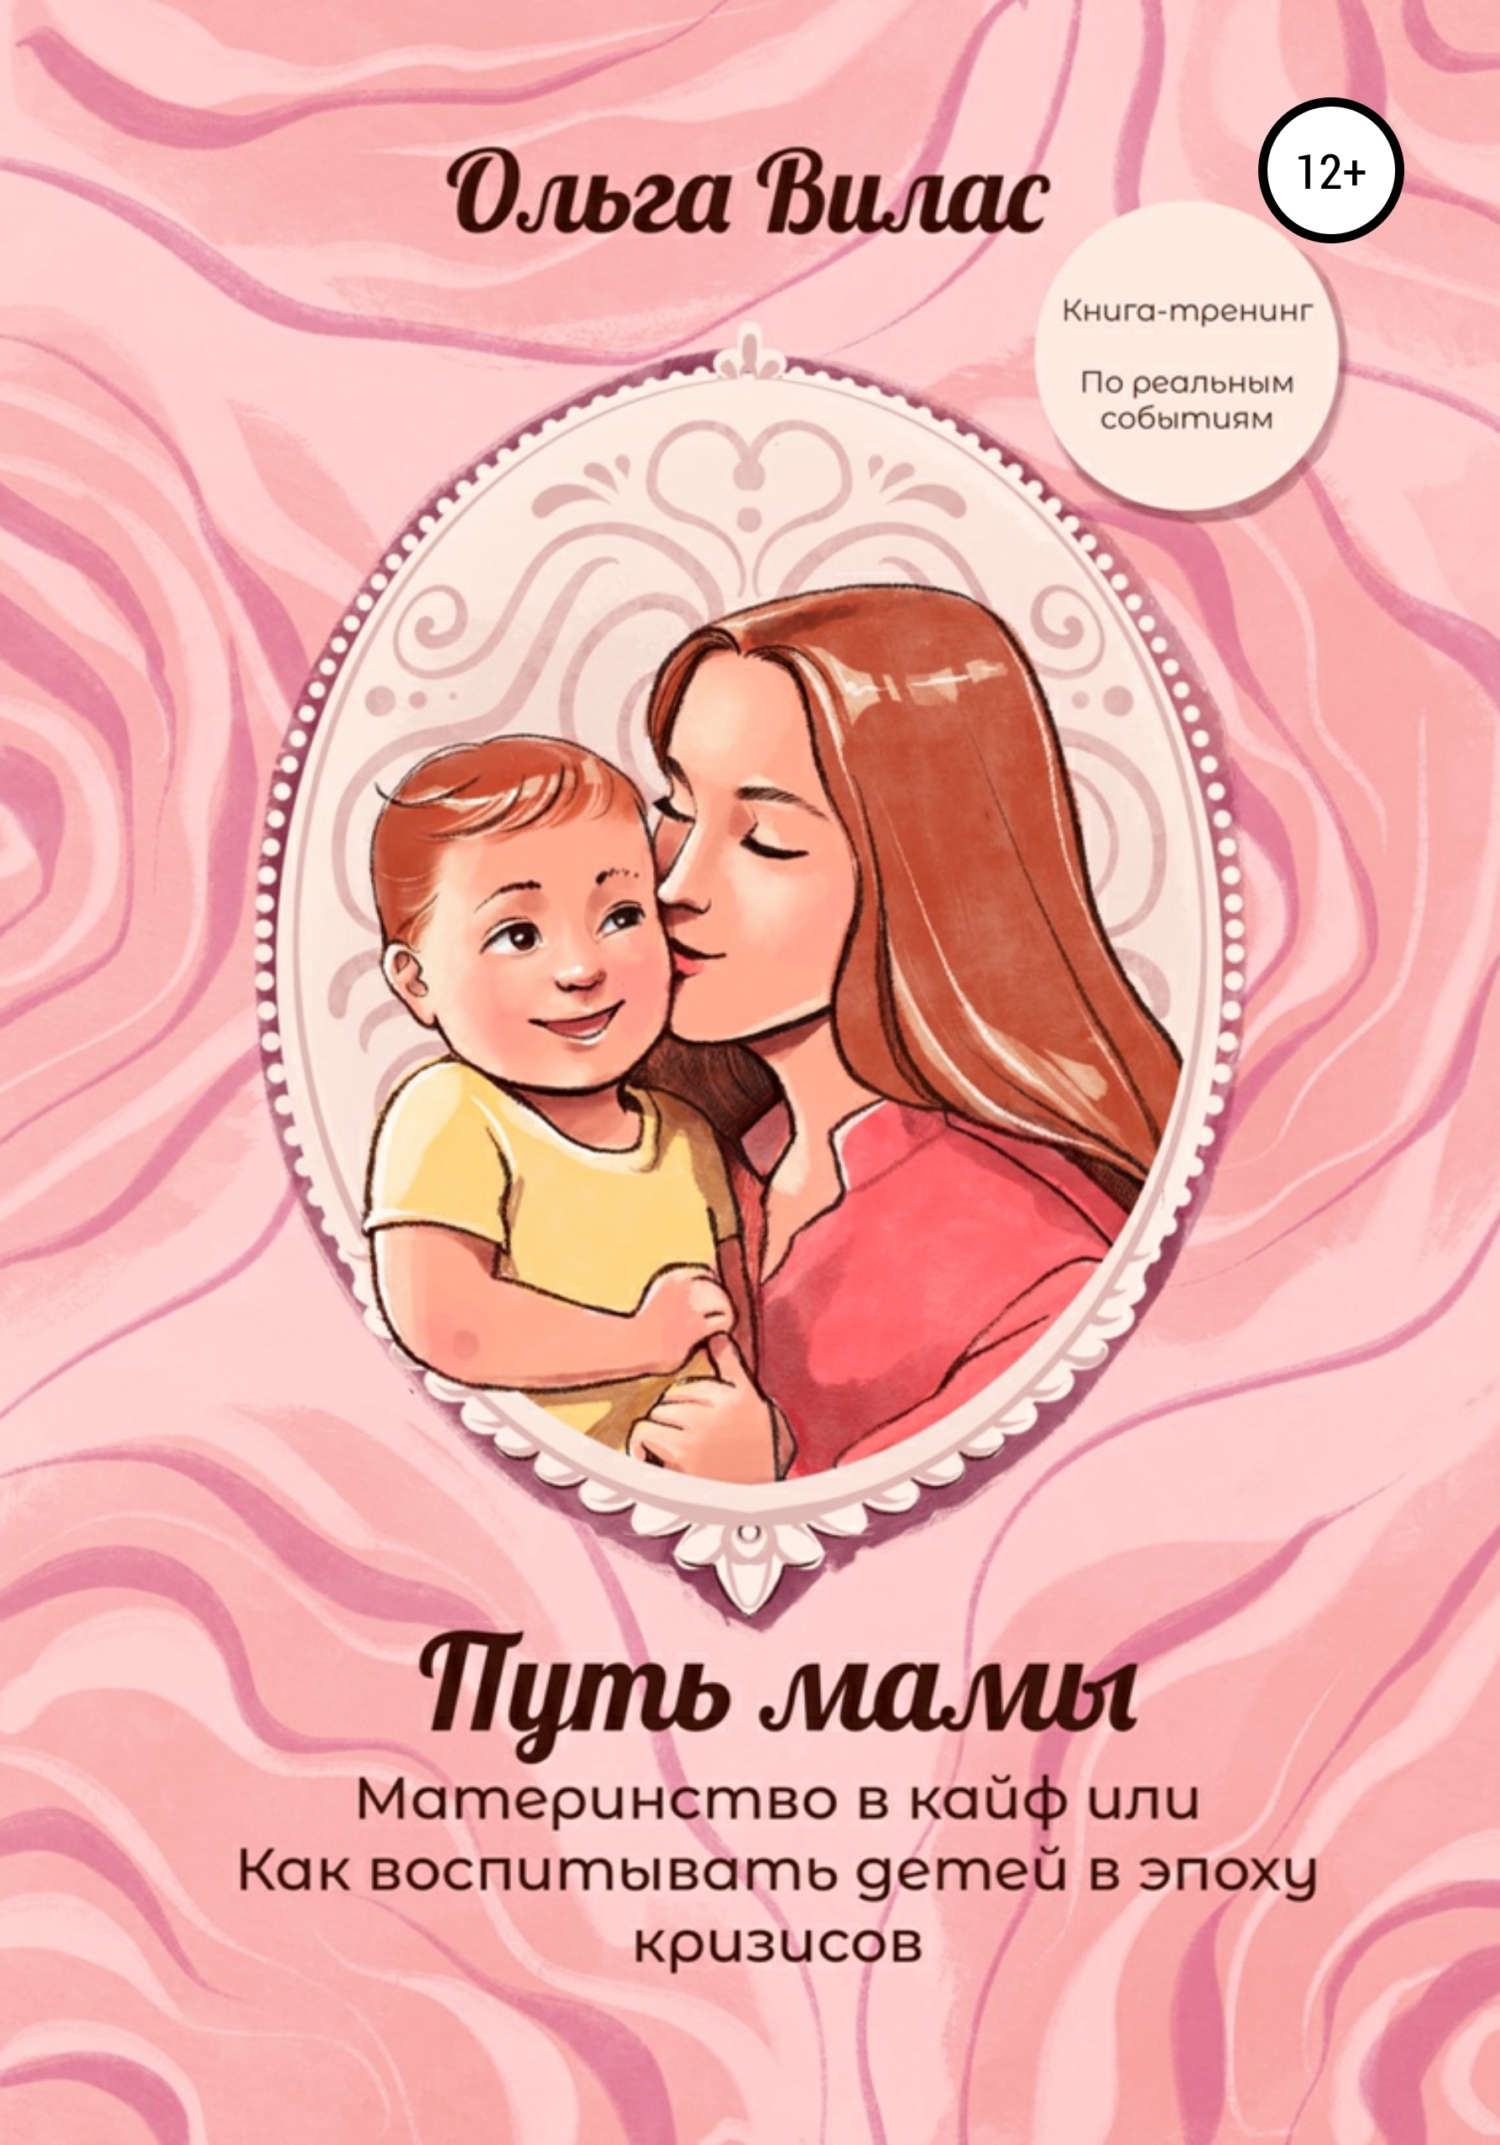 Главная книга мамы и малыша